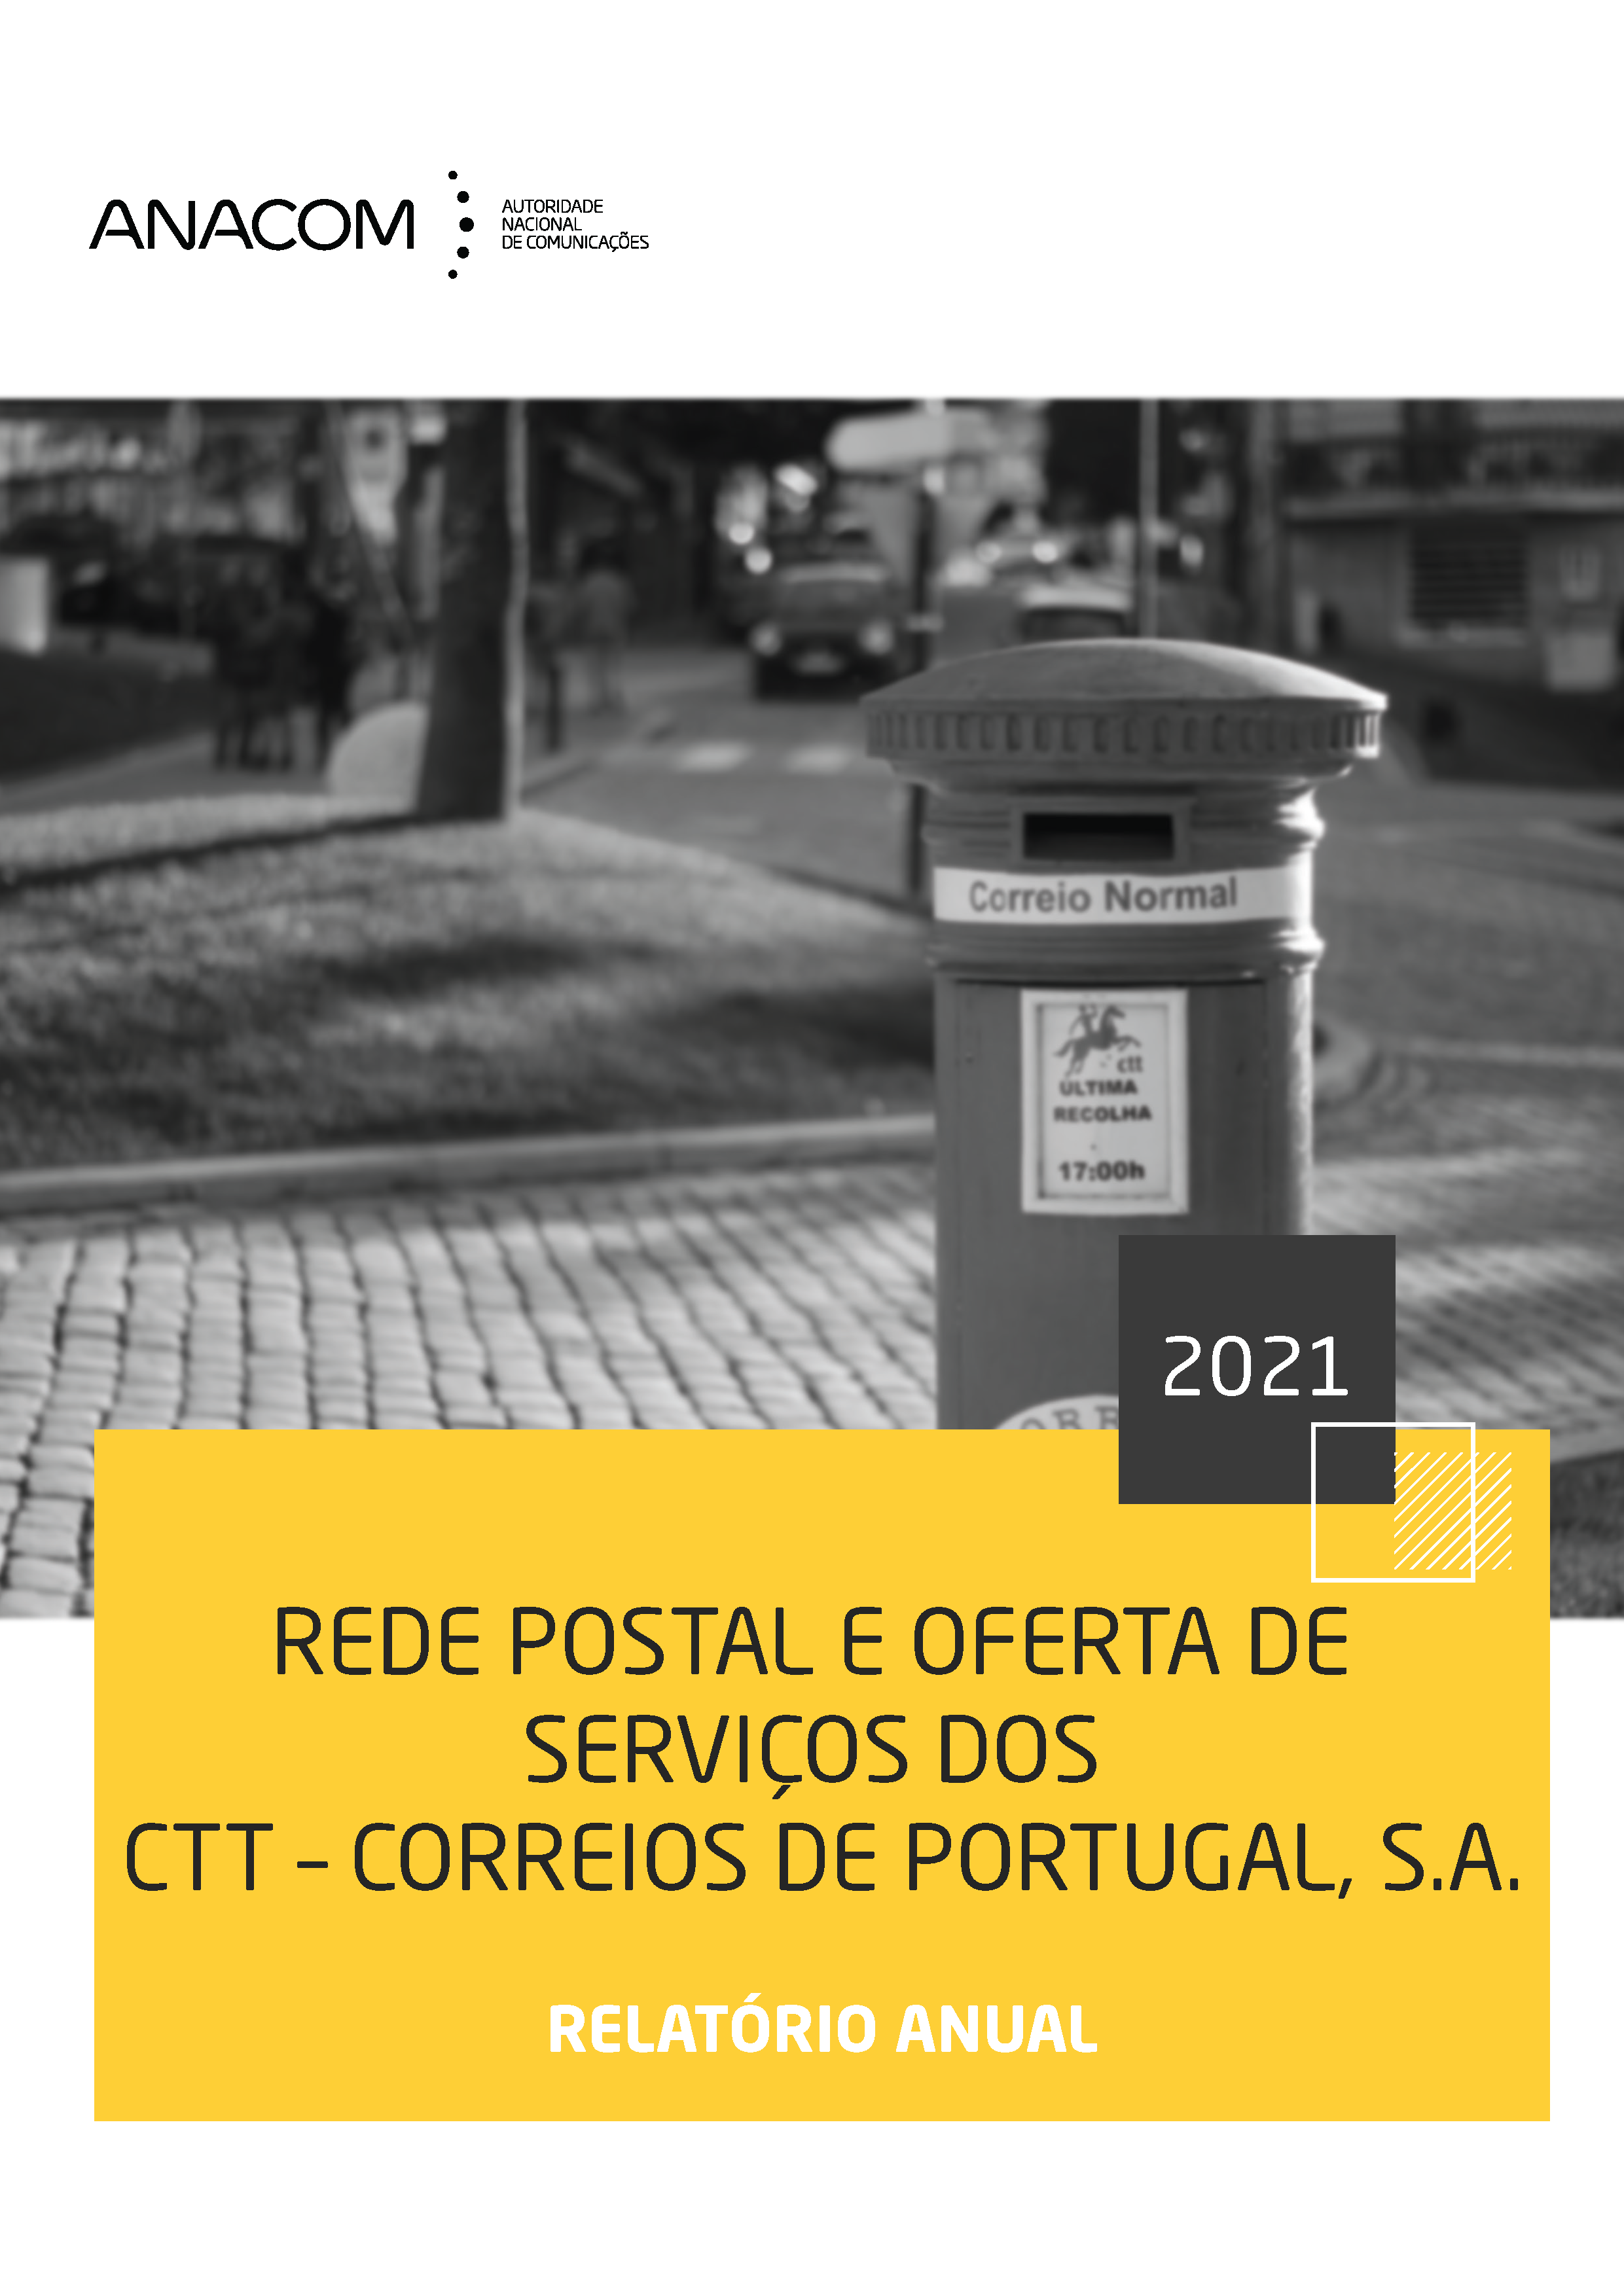 Rede postal e oferta de serviços dos CTT - Correios de Portugal em 2021